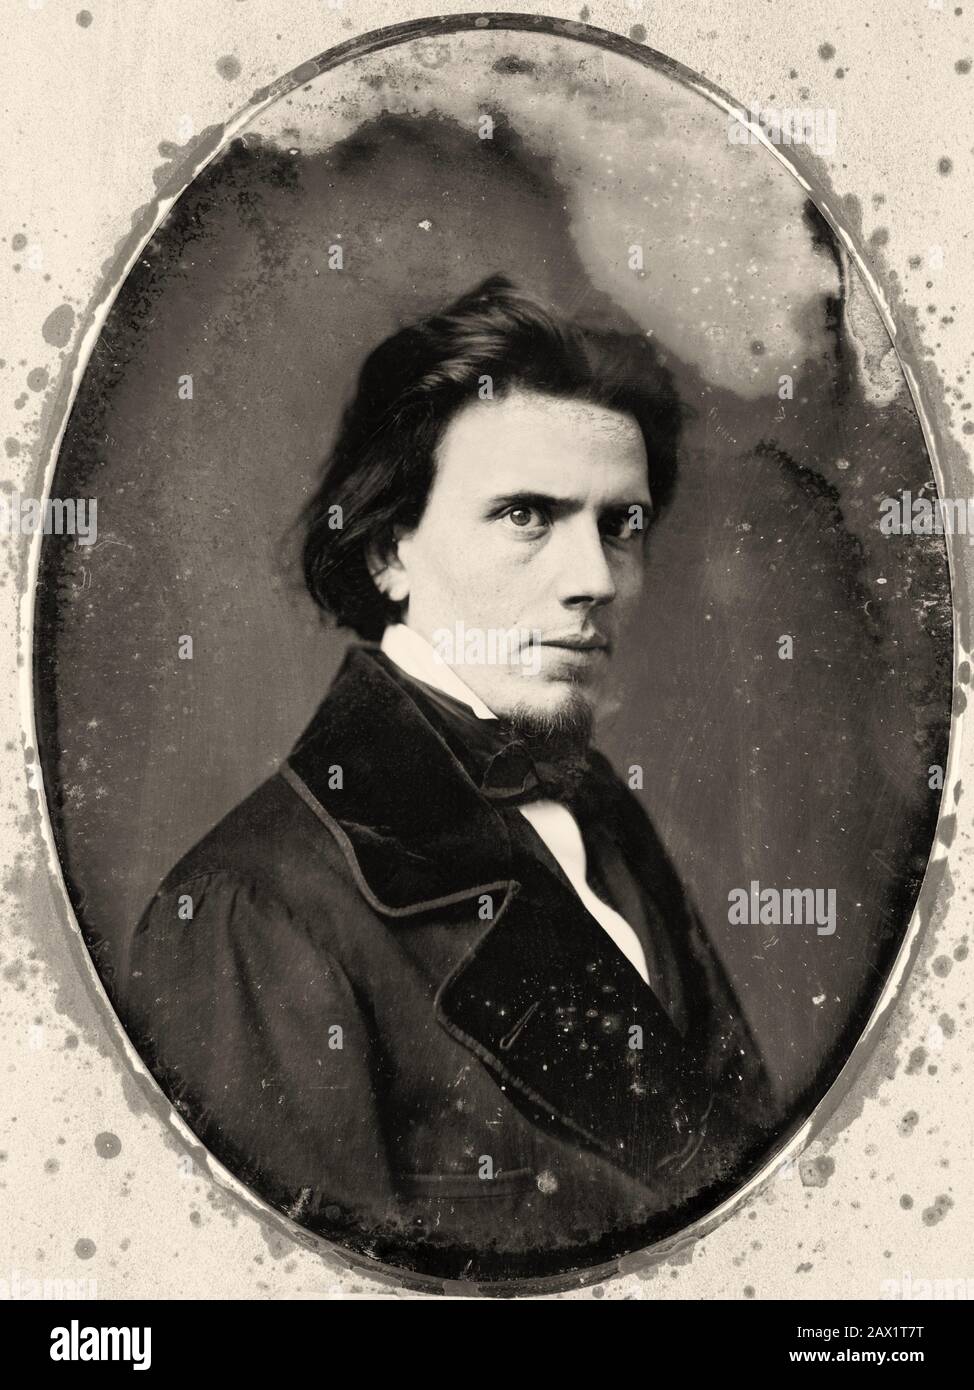 1850 ca , Washington , USA : il pittore americano Francis Bicknell Carpenter ( 1830 - 1900 ) . Foto daguerreotype di Mathew BRADY ( Washington , DC ). Il falegname era un artista che dipinse ritratti famosi di Abraham Lincoln e della sua famiglia . Divenne un amico di Lincoln e scrisse un libro chiamato 'Sei Mesi con Lincoln ' . - PITTORE - RITRATTO - ritratti - STORIA - ARTE - SCRITORE - SCRITTORE - BARBA - BARBA - collare - colletto - cravatta - cravatta - papillon - OTTOCENTO - 800 - '800 - MODA - moda - moda ---- Archivio GBB Foto Stock